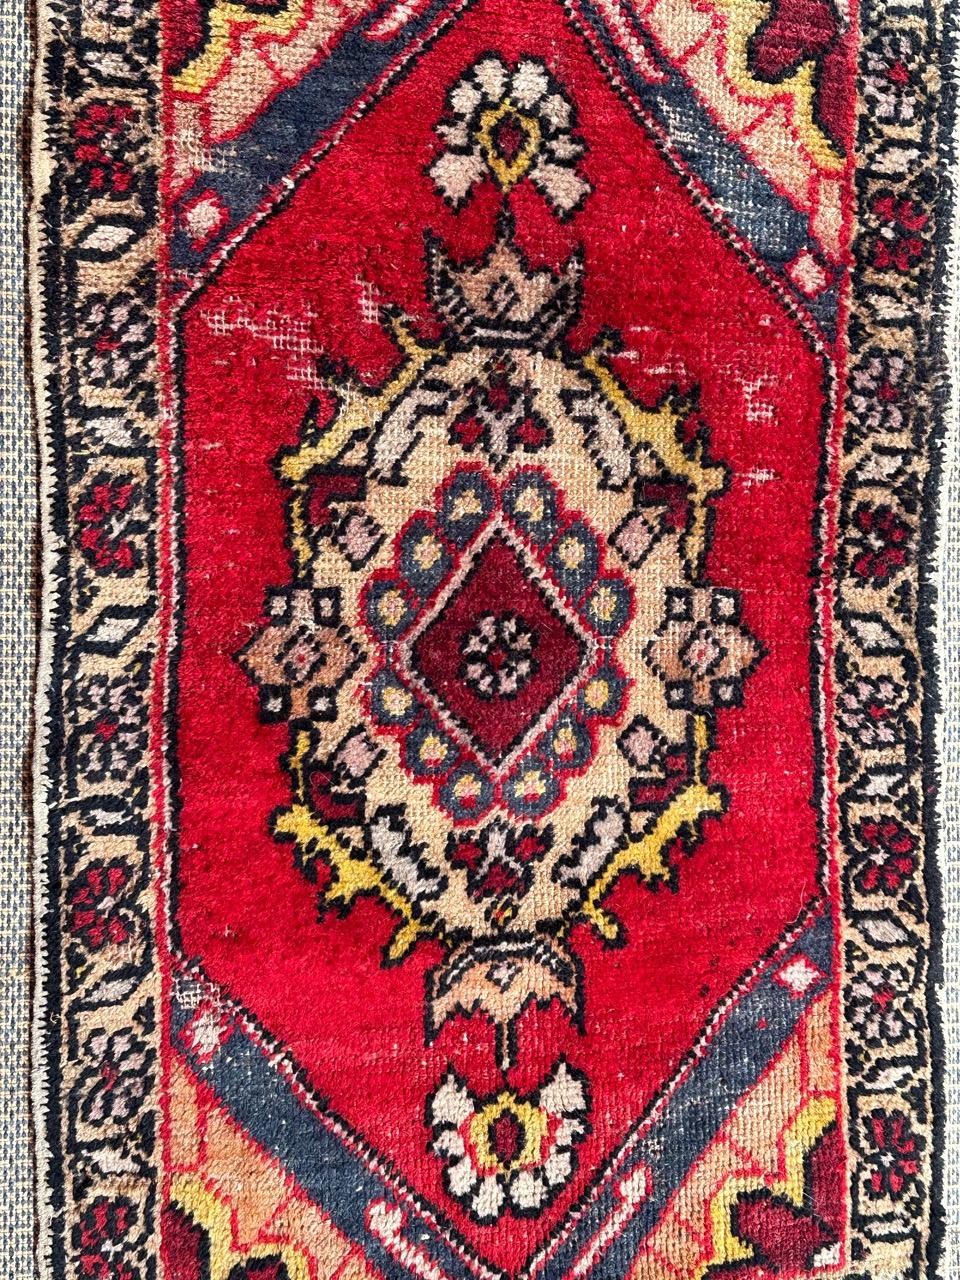 Joli petit tapis turc en détresse avec de jolis motifs géométriques et de belles couleurs, entièrement noué à la main avec de la laine sur un support en coton. 
Porte 

✨✨✨
